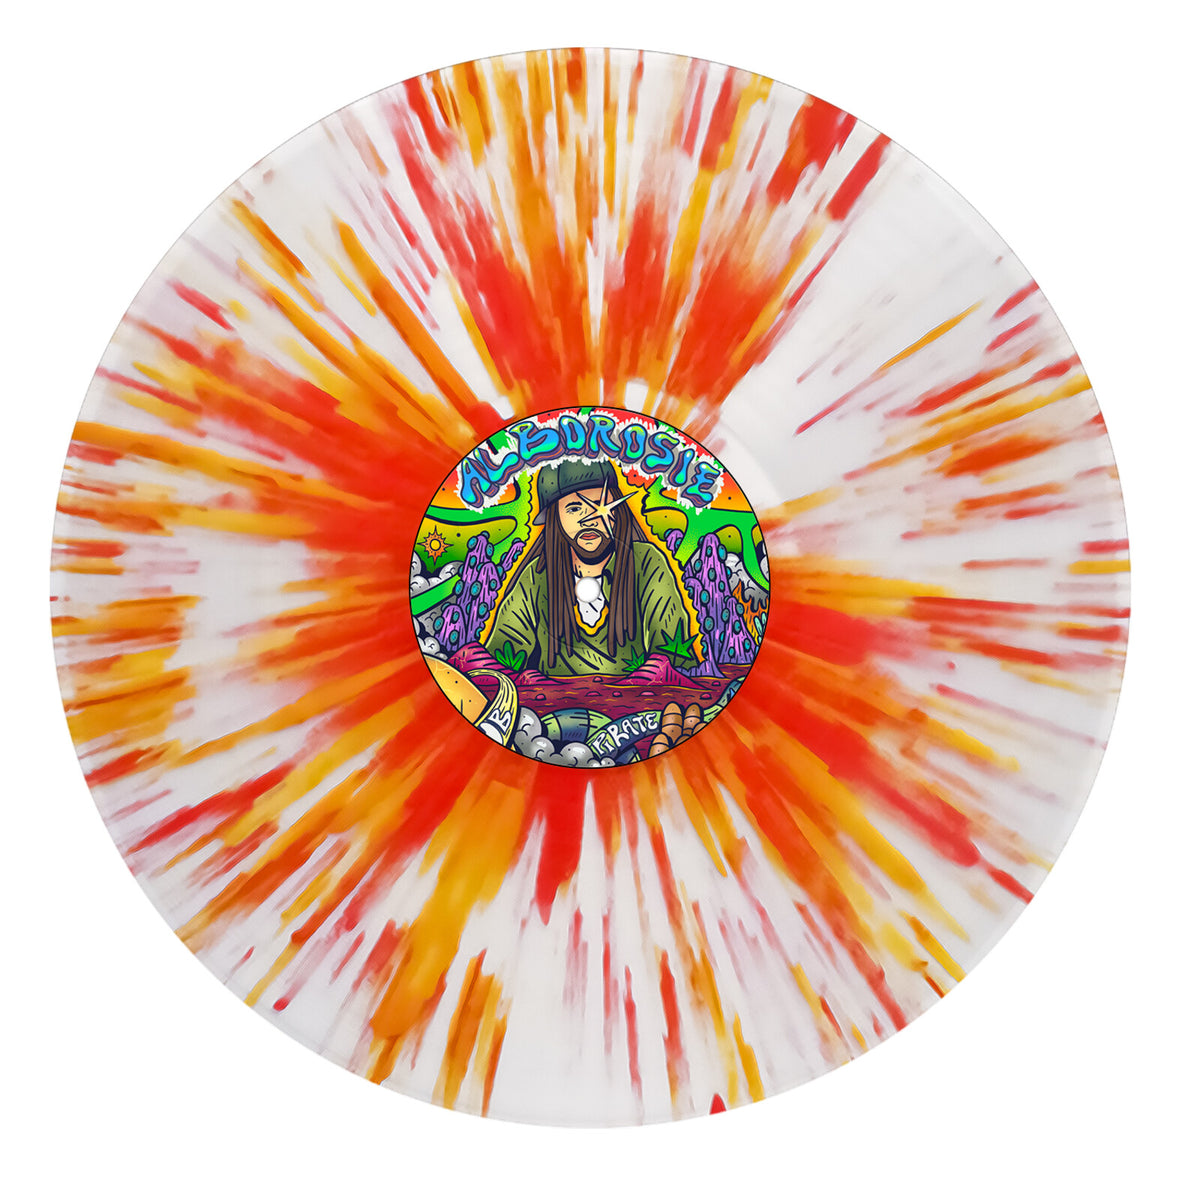 Alborosie - Dub Pirate (180g White & Orange Splatter Vinyl) - EVLP055WOS